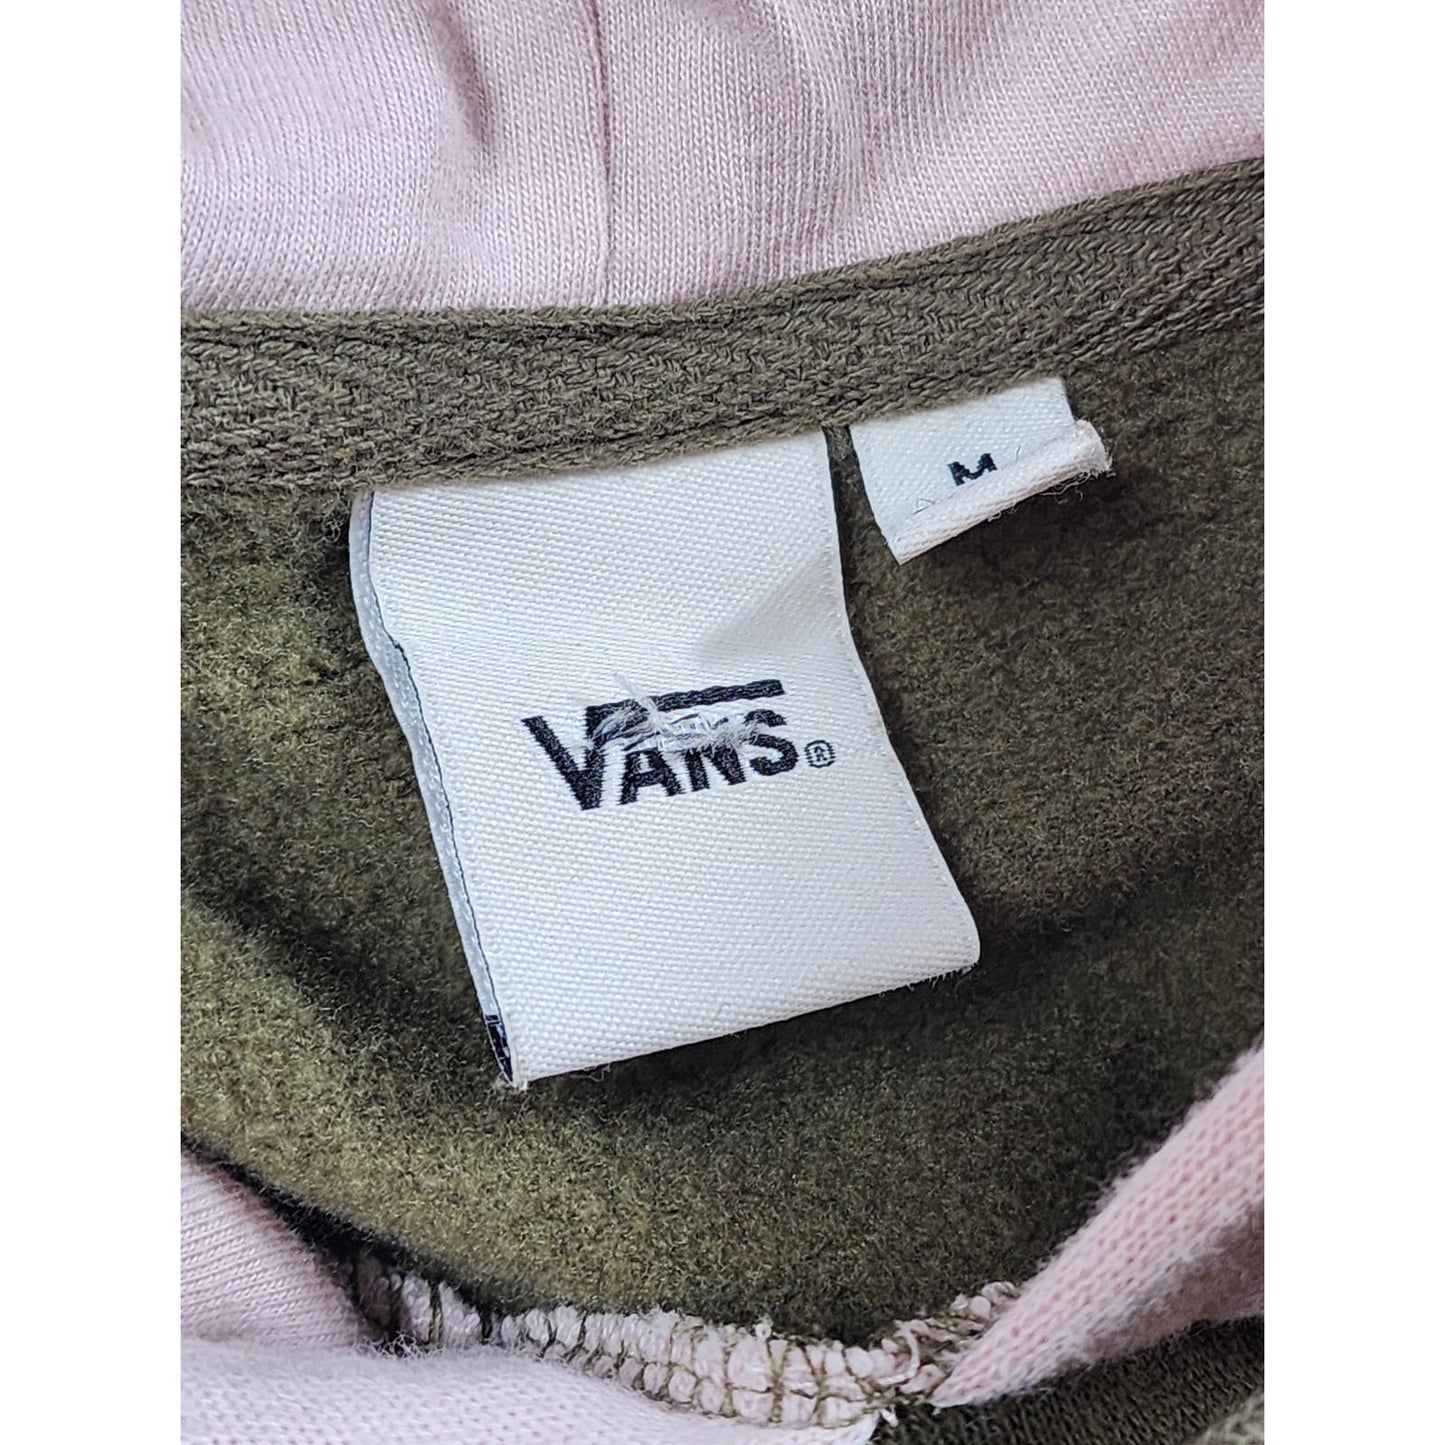 VANS Hoodie Womens Medium Pullover Color Block Kangaroo Pocket Skater Sweatshirt